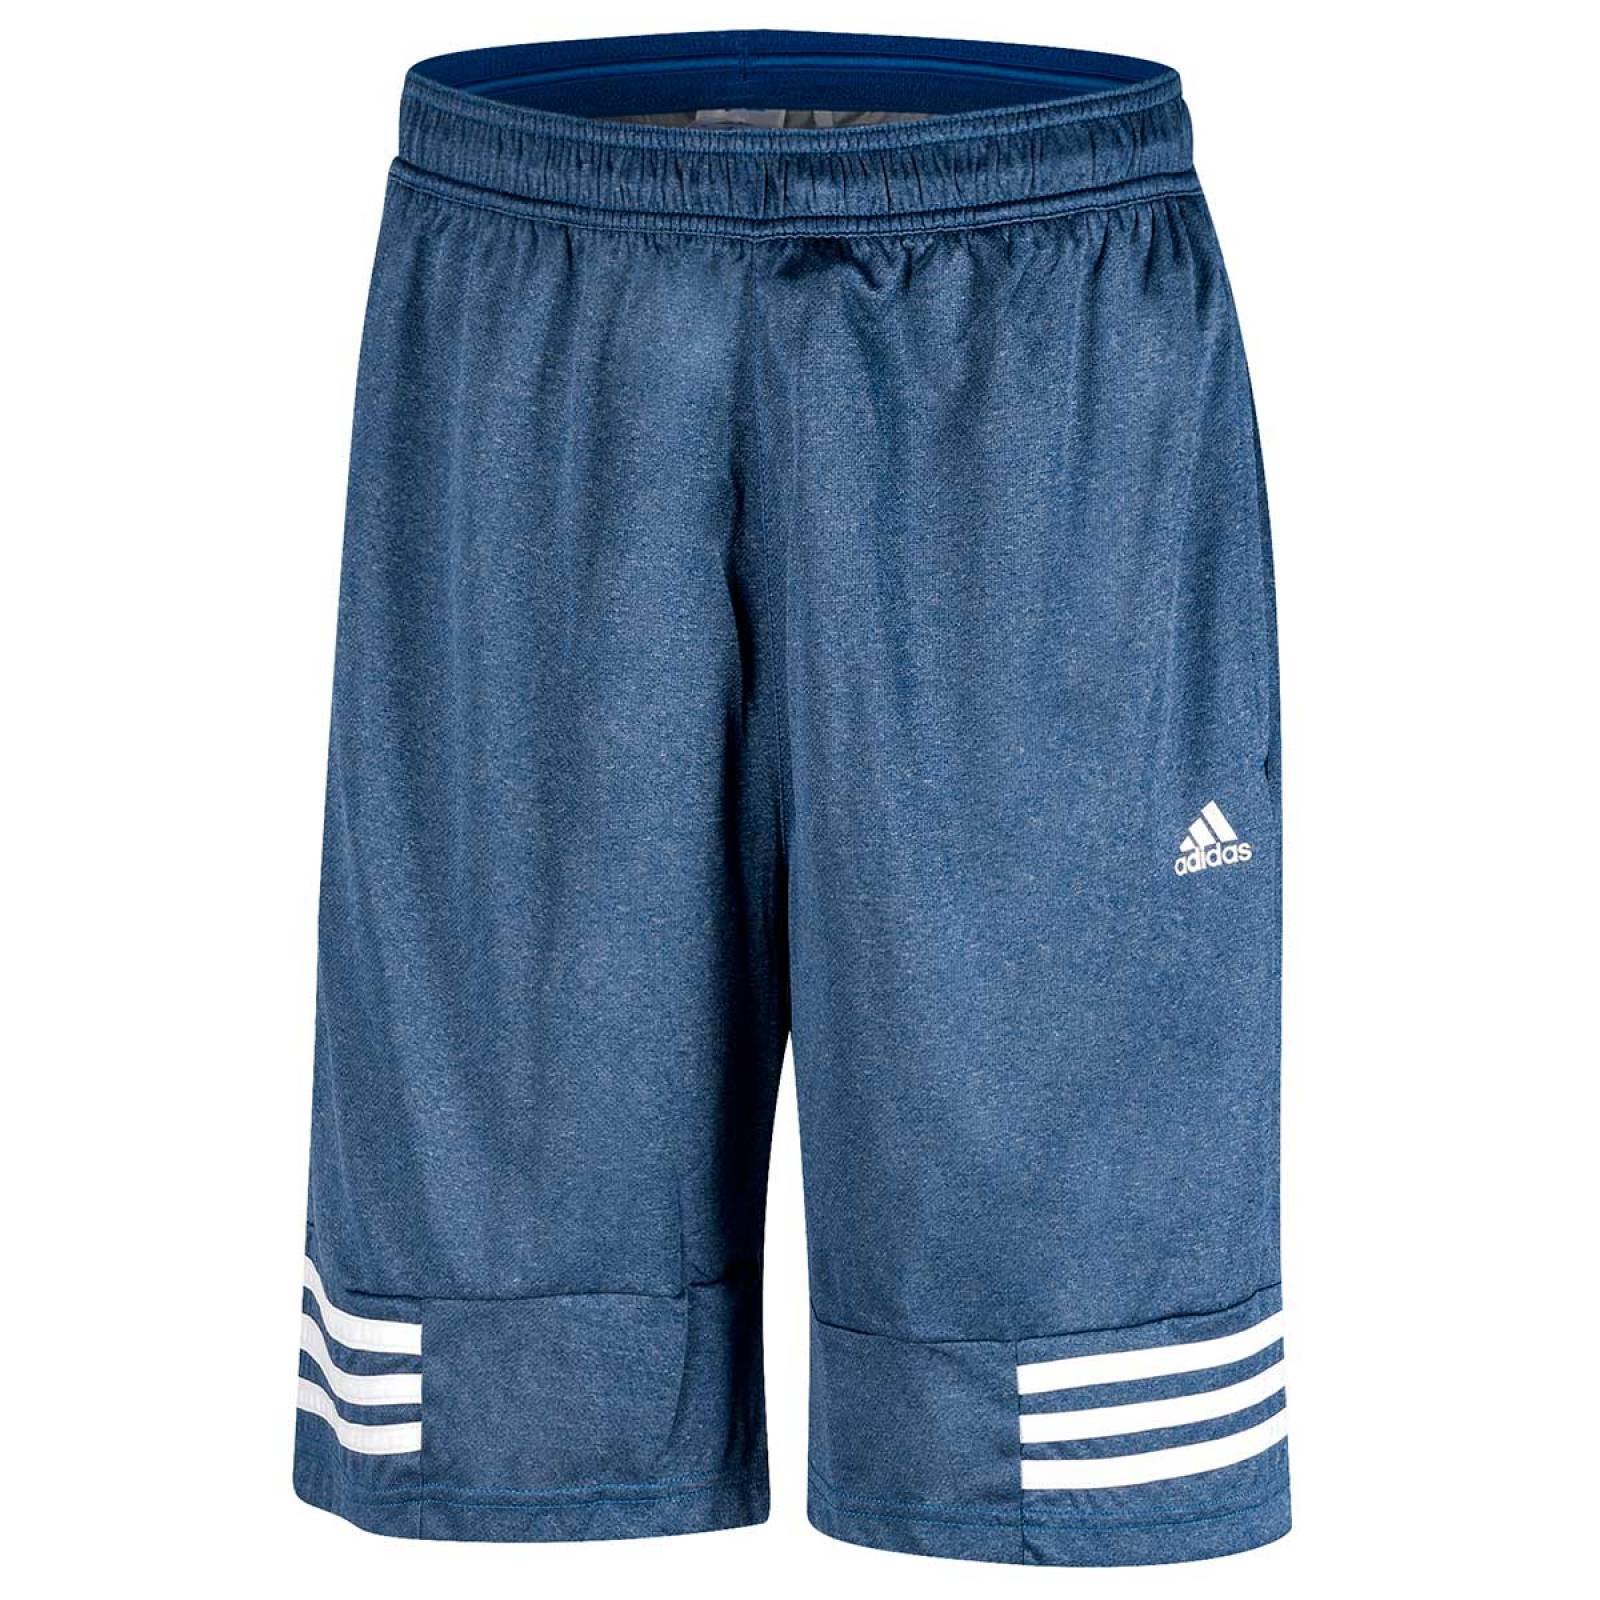 Adidas Short-bermuda Hombre Azul